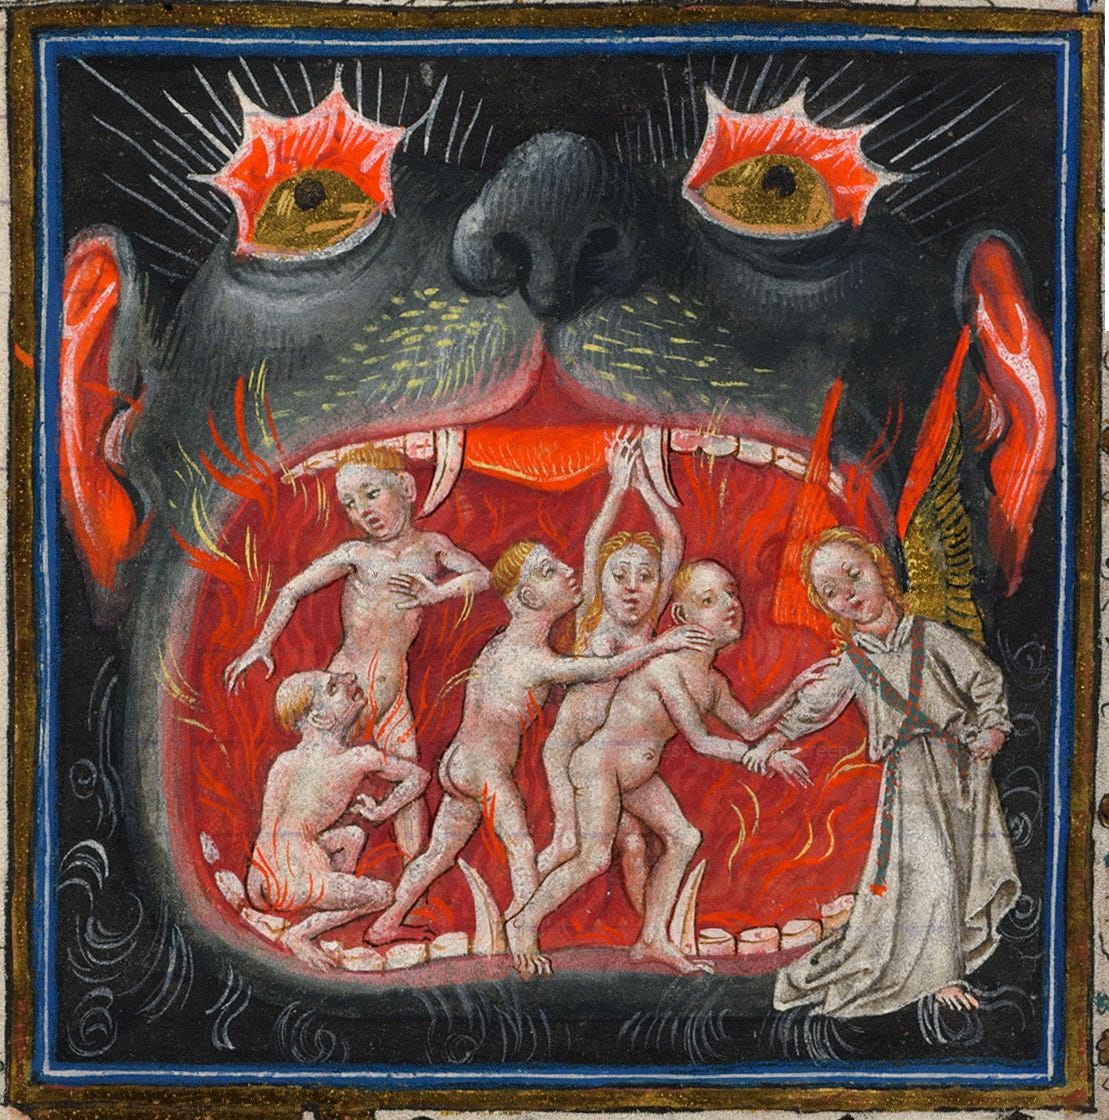 Hellmouth - Wikipedia